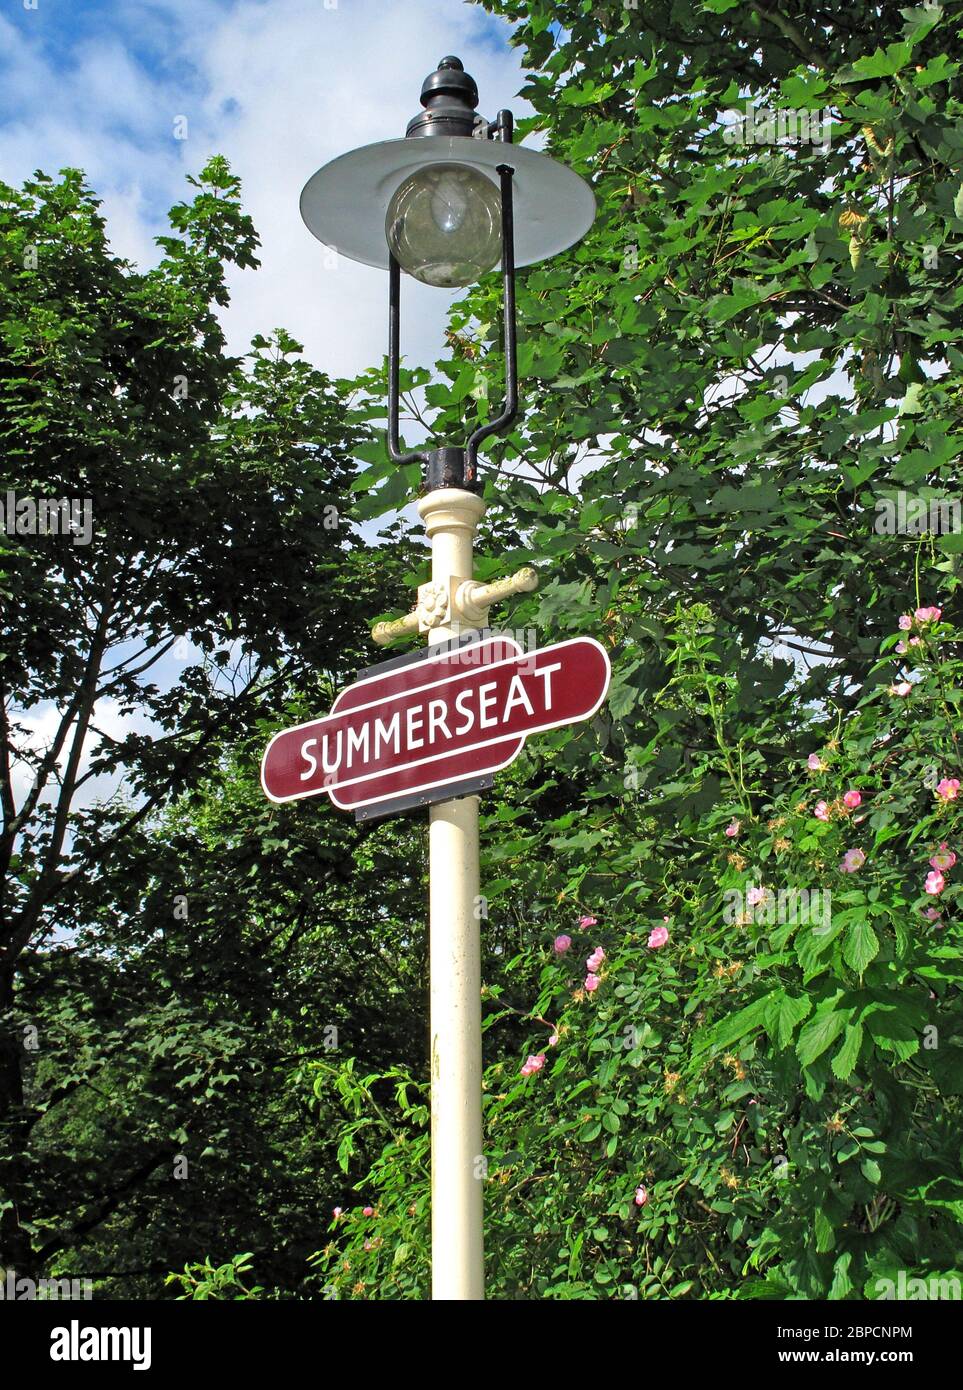 Summerseat Station signe sur une lampe, Lancashire, Angleterre, Royaume-Uni Banque D'Images